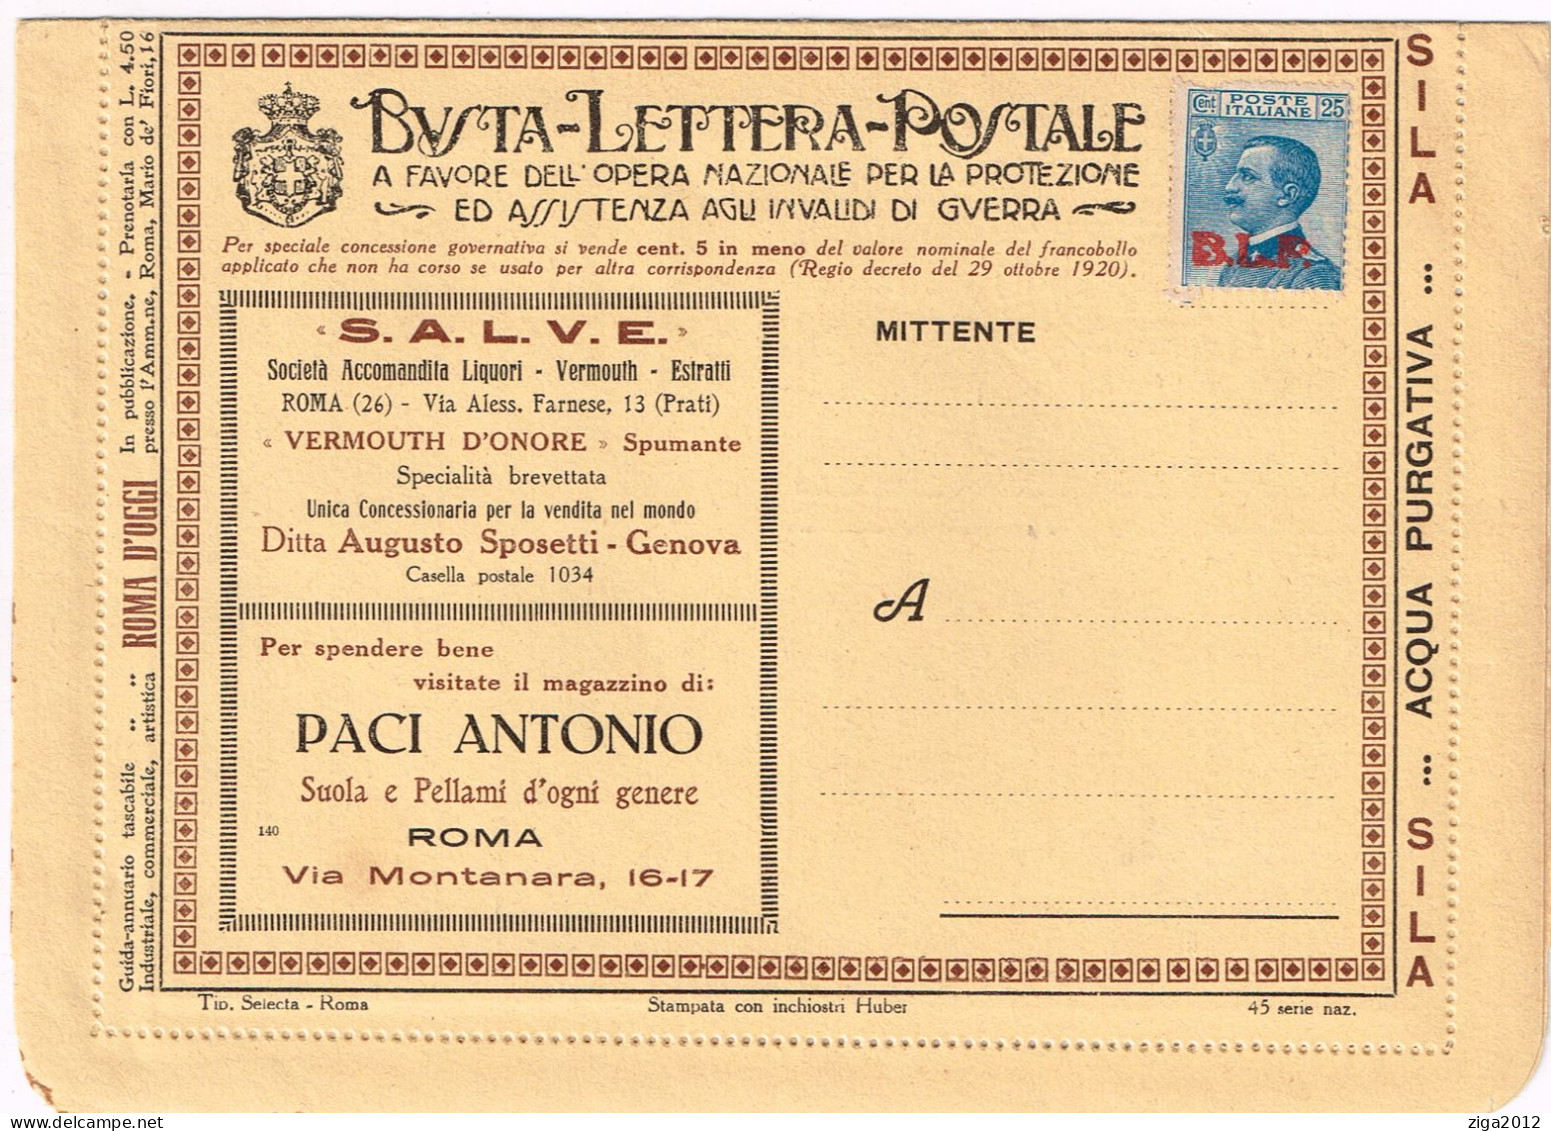 ITALY 1923 B.L.P. BUSTA LETTERA POSTALE CON C.25 III° TIPO NUOVA E COMPLETA - Pubblicitari